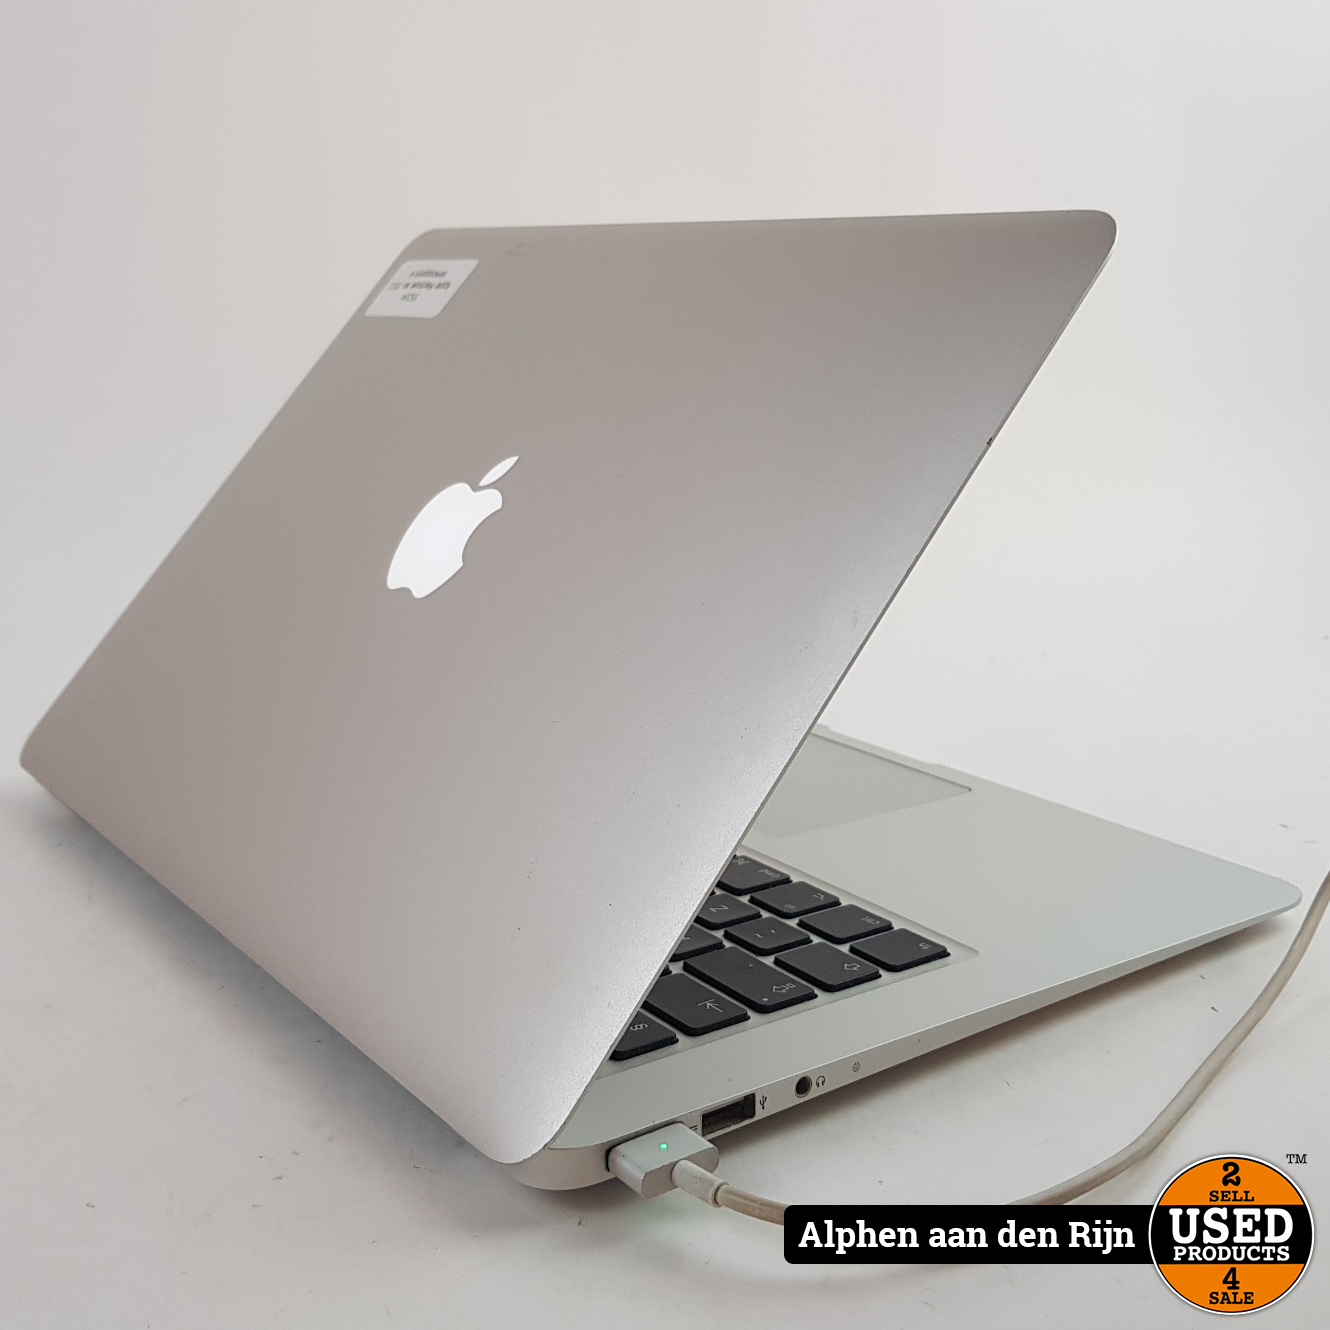 短納期Mac Book Air (13inch， 2012) & SuperDrive MacBook本体